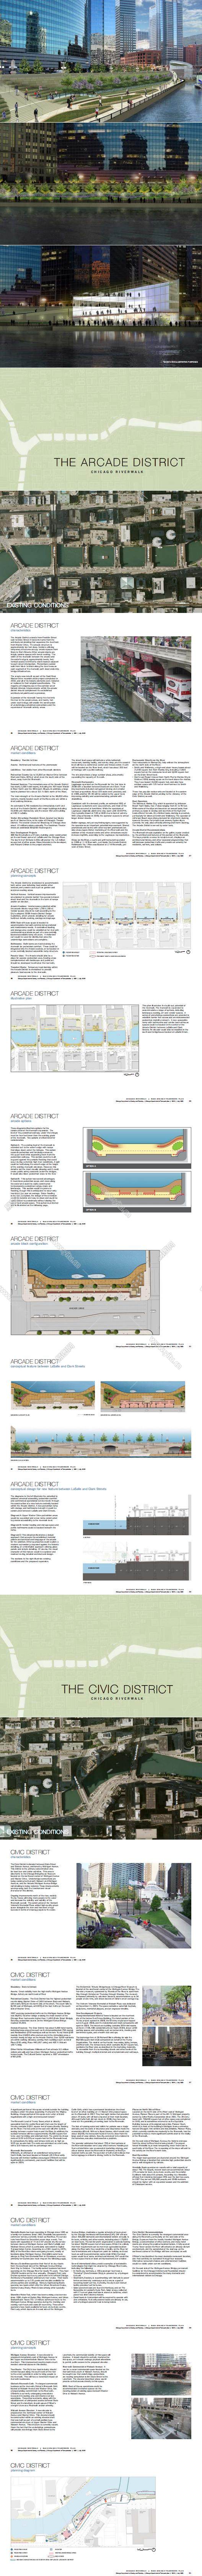 SOM-Chicago Riverwalk Main Branch Framework Plan（72页）_00.jpg